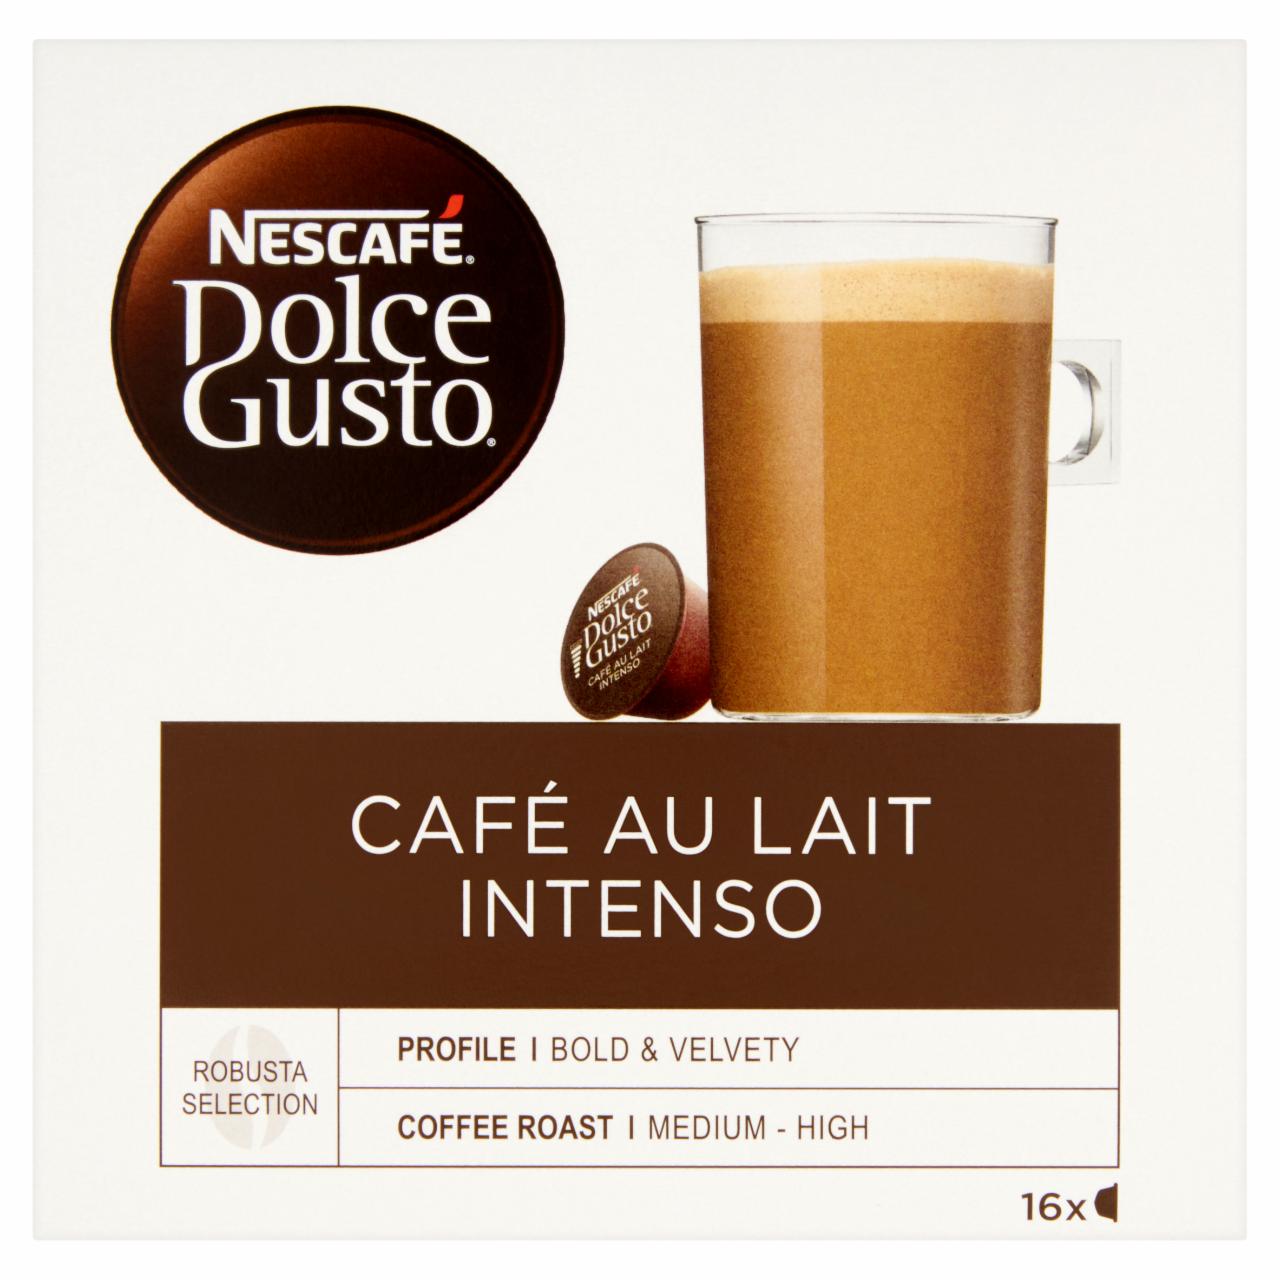 Képek - NESCAFÉ Dolce Gusto Café au Lait Intenso tejes kávékapszula 16 db/16 csésze 160 g